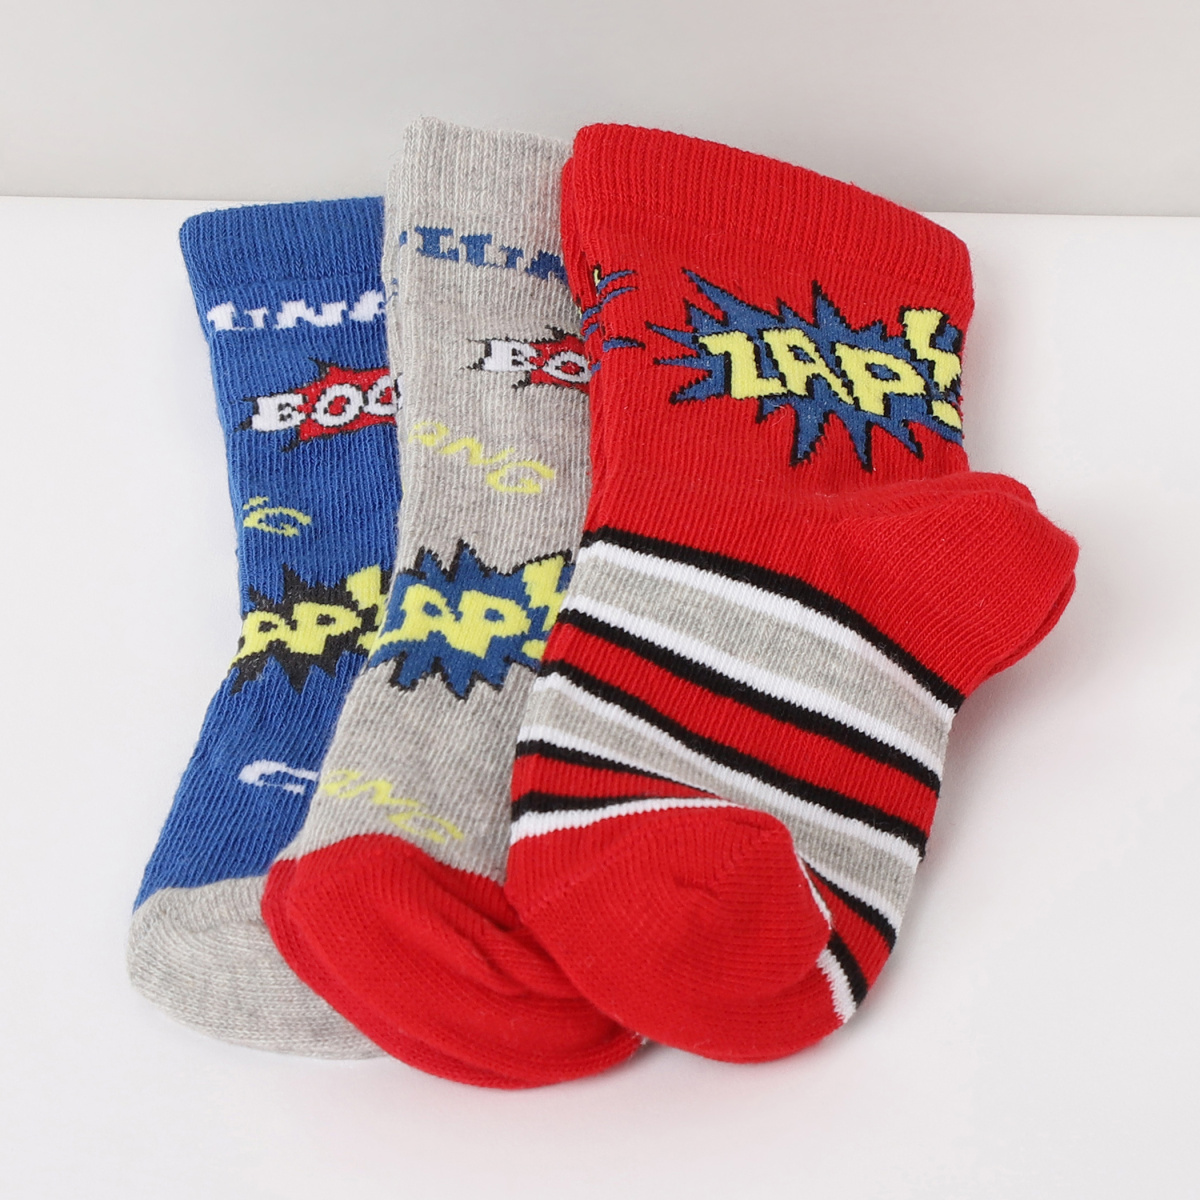 MAX Printed Socks - Set of 3